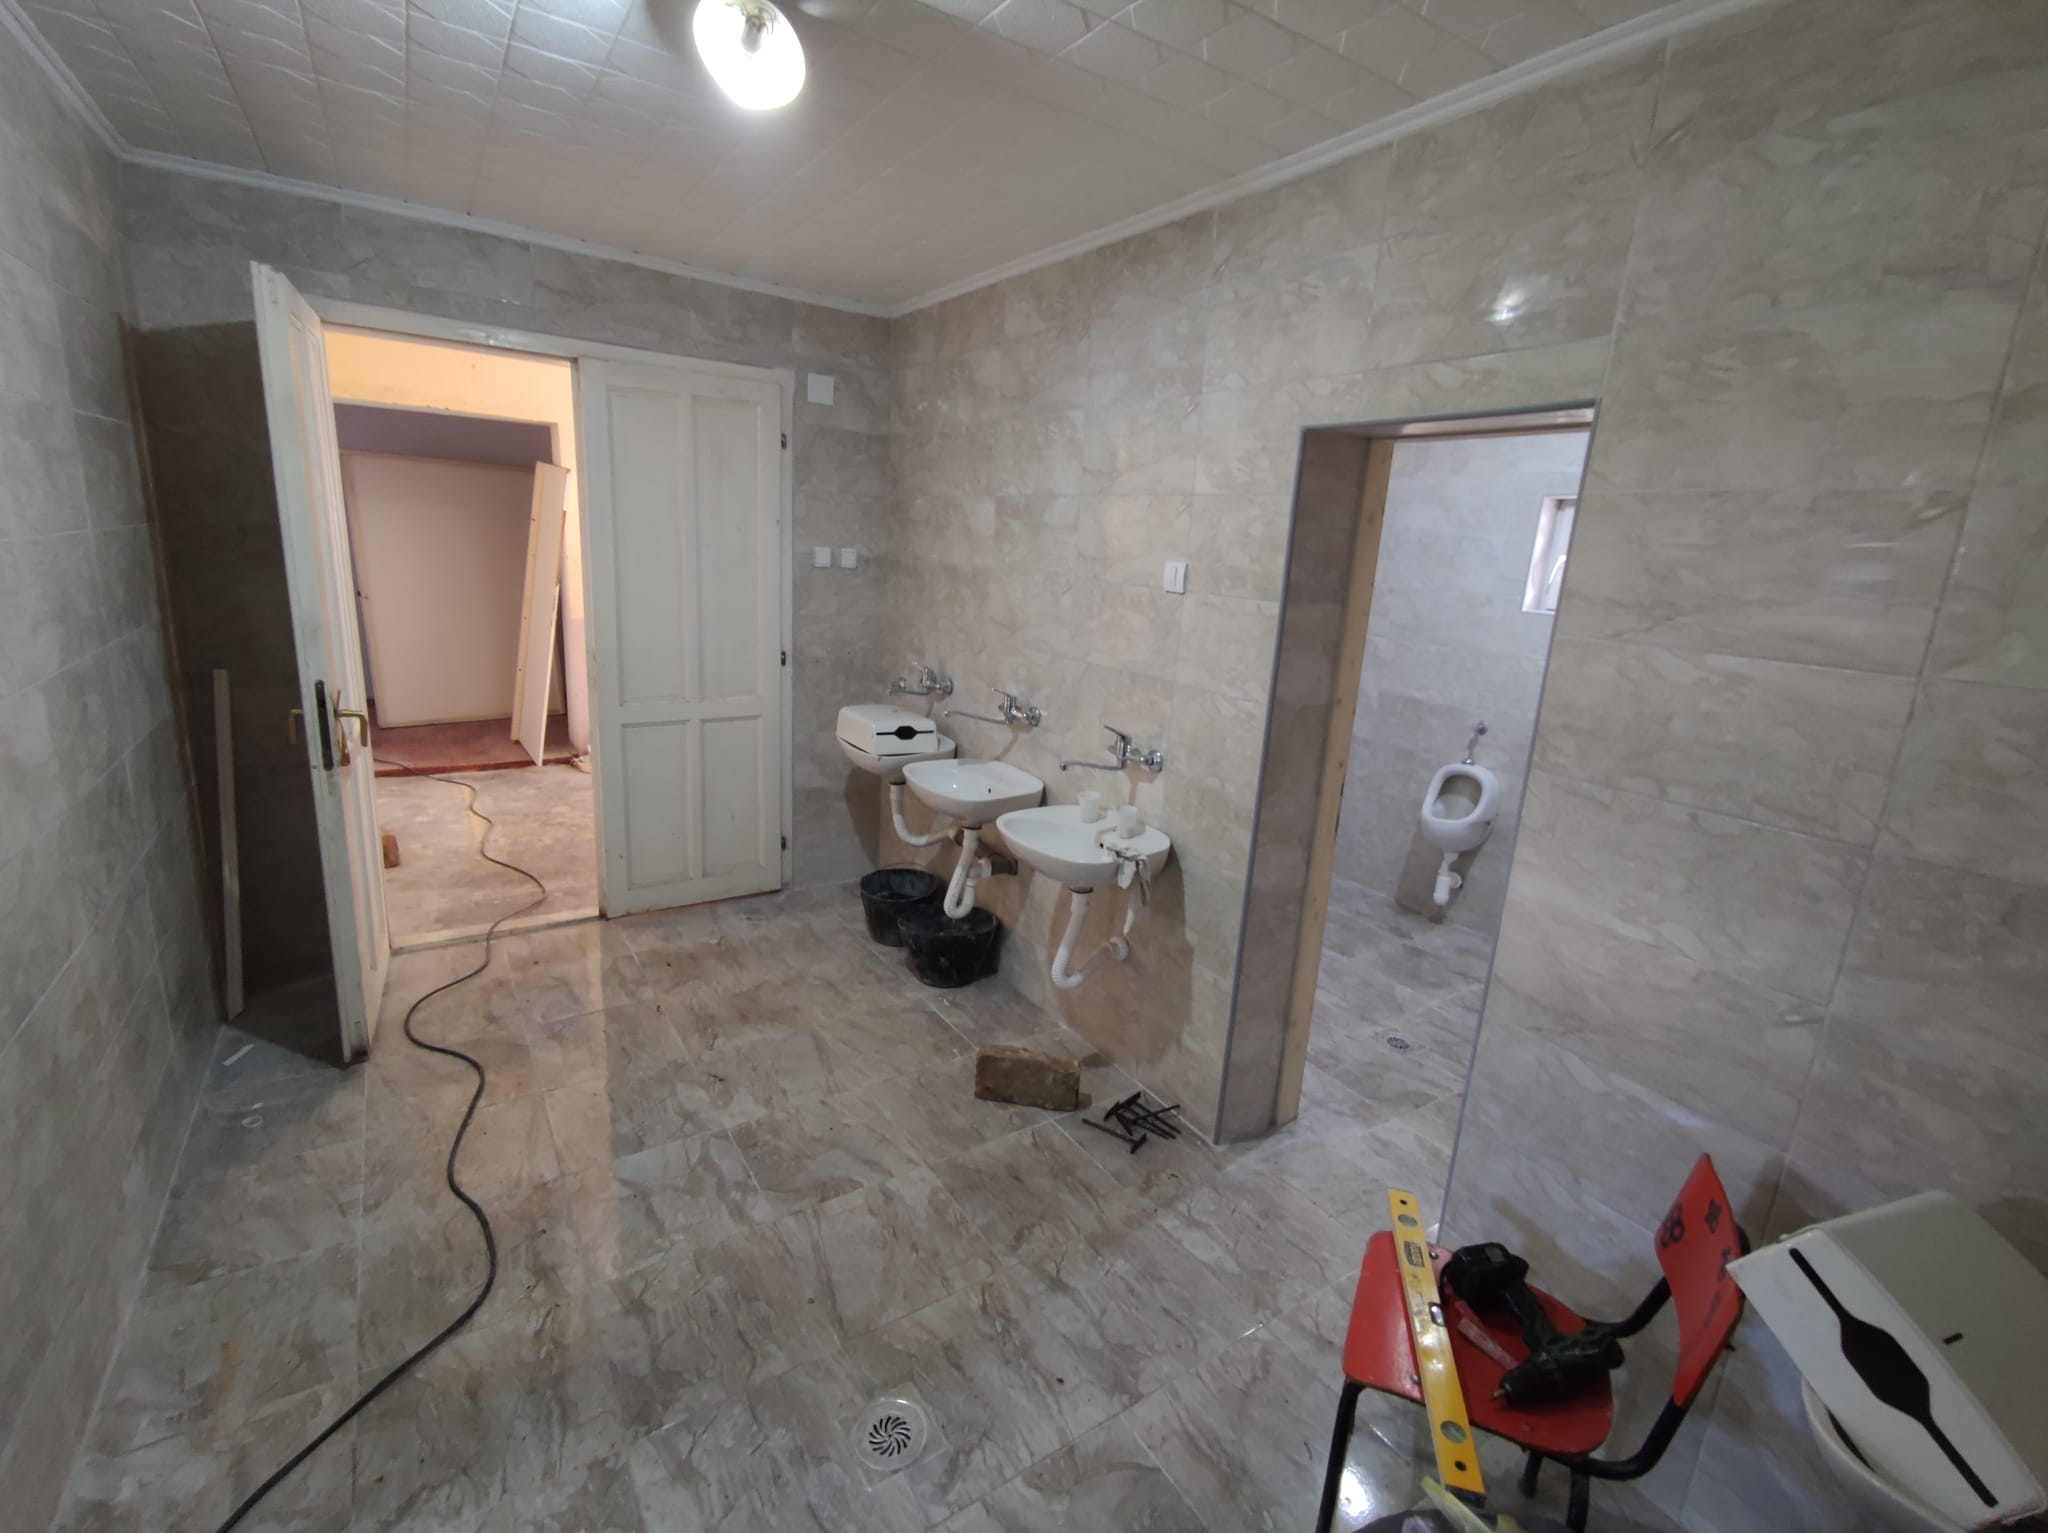 Renovirani toaleti u OŠ “Prvi maj” u Vladimirovcu